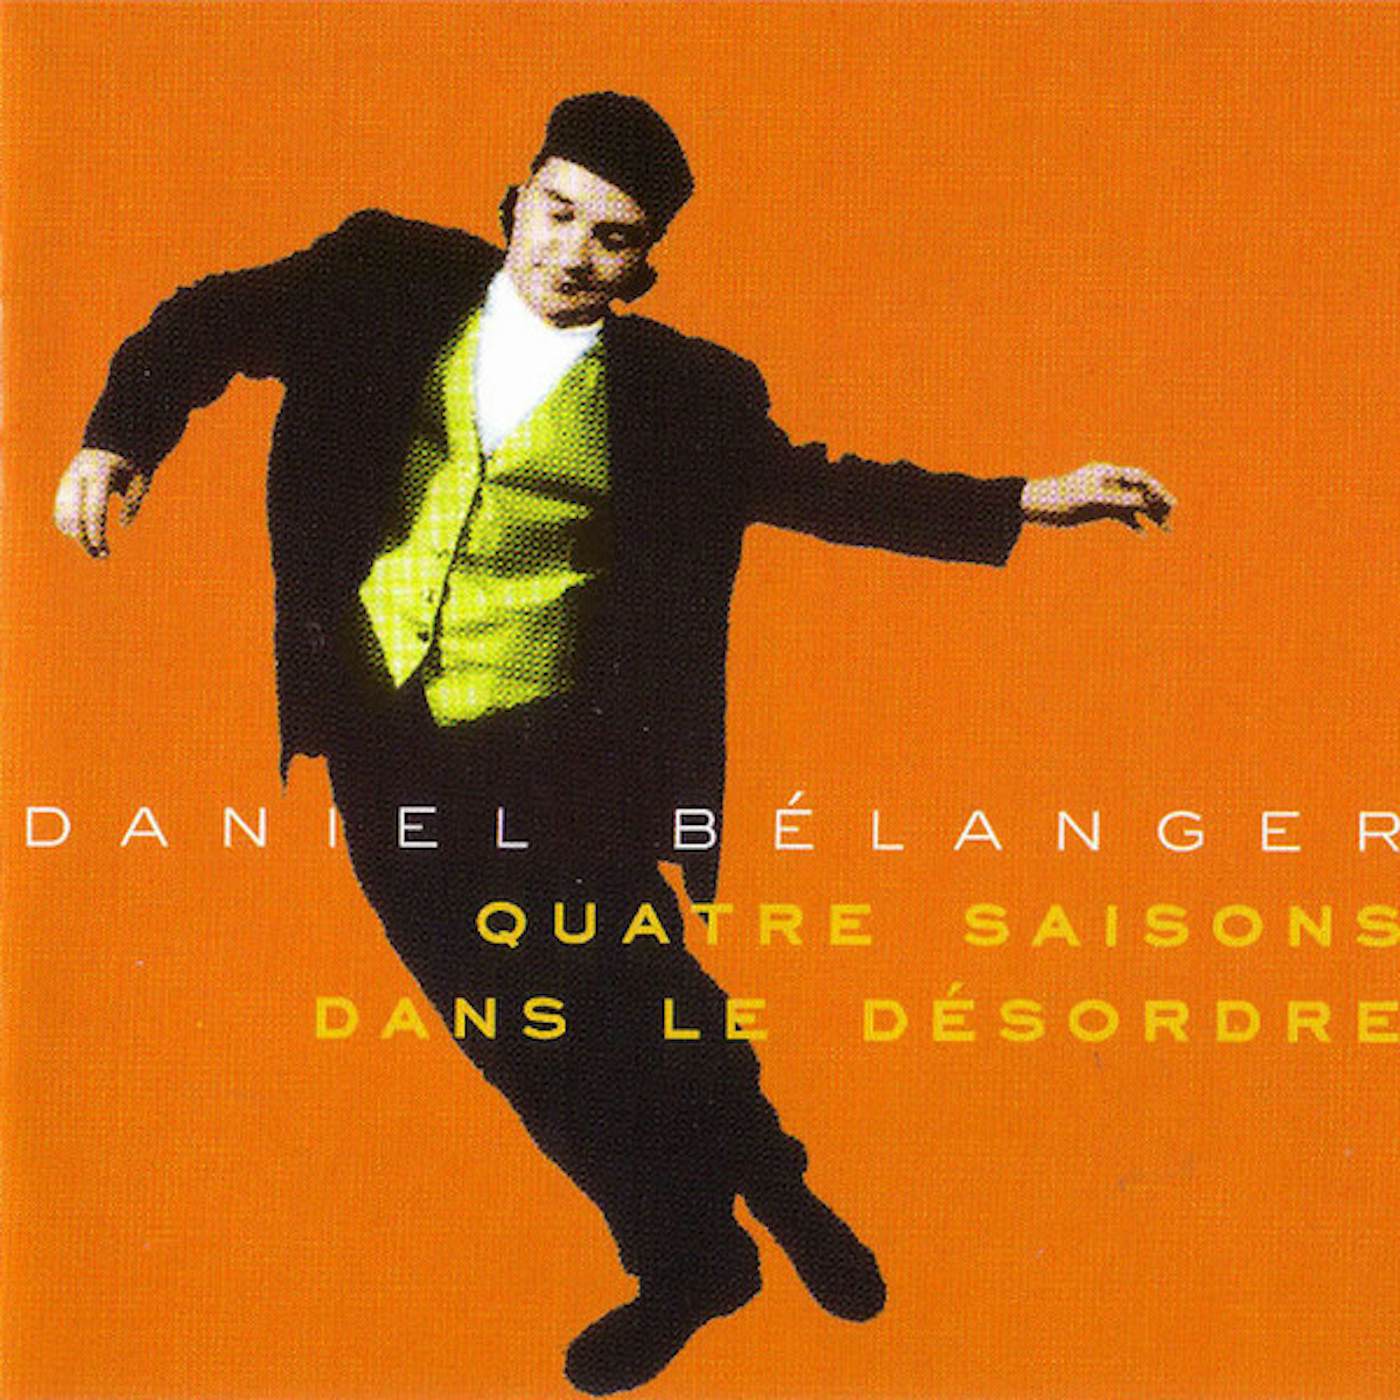 Daniel Bélanger QUATRE SAISONS DANS LE DESORDRE Vinyl Record